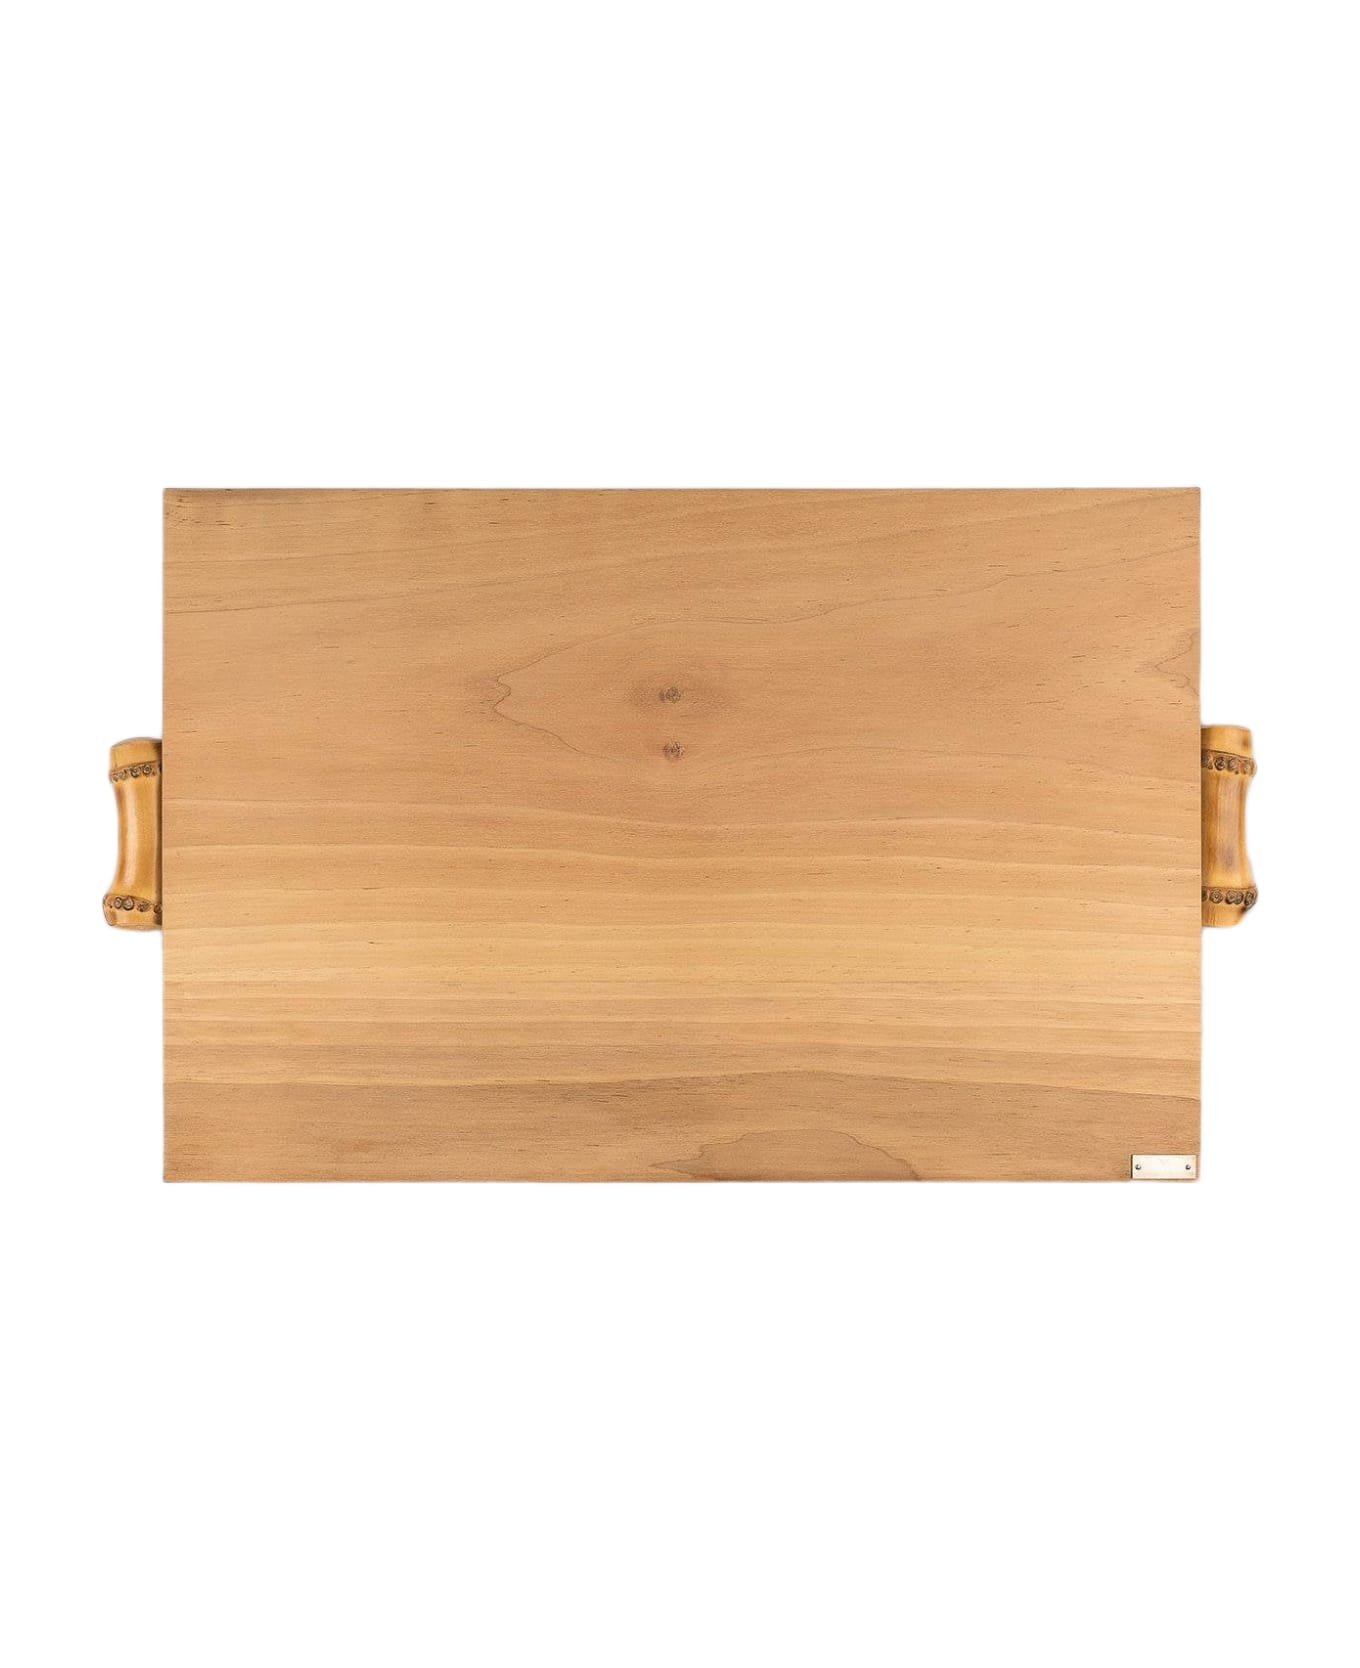 Larusmiani Walnut Wood Cutting Board  - Neutral カトラリー